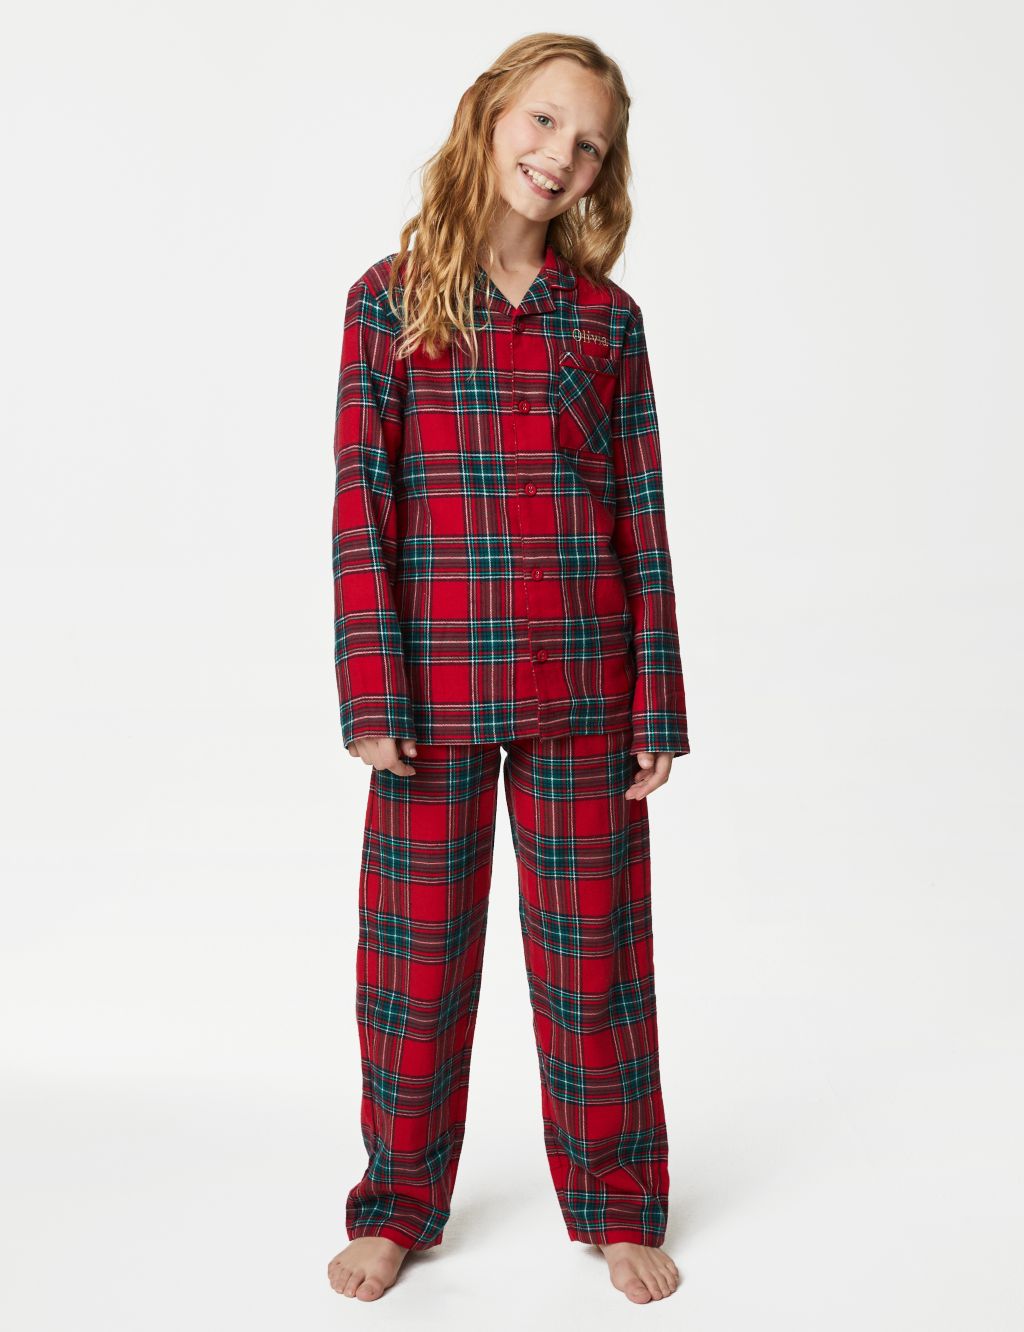 Personalised Kids' Checked Pyjamas Set (1-16 Yrs)